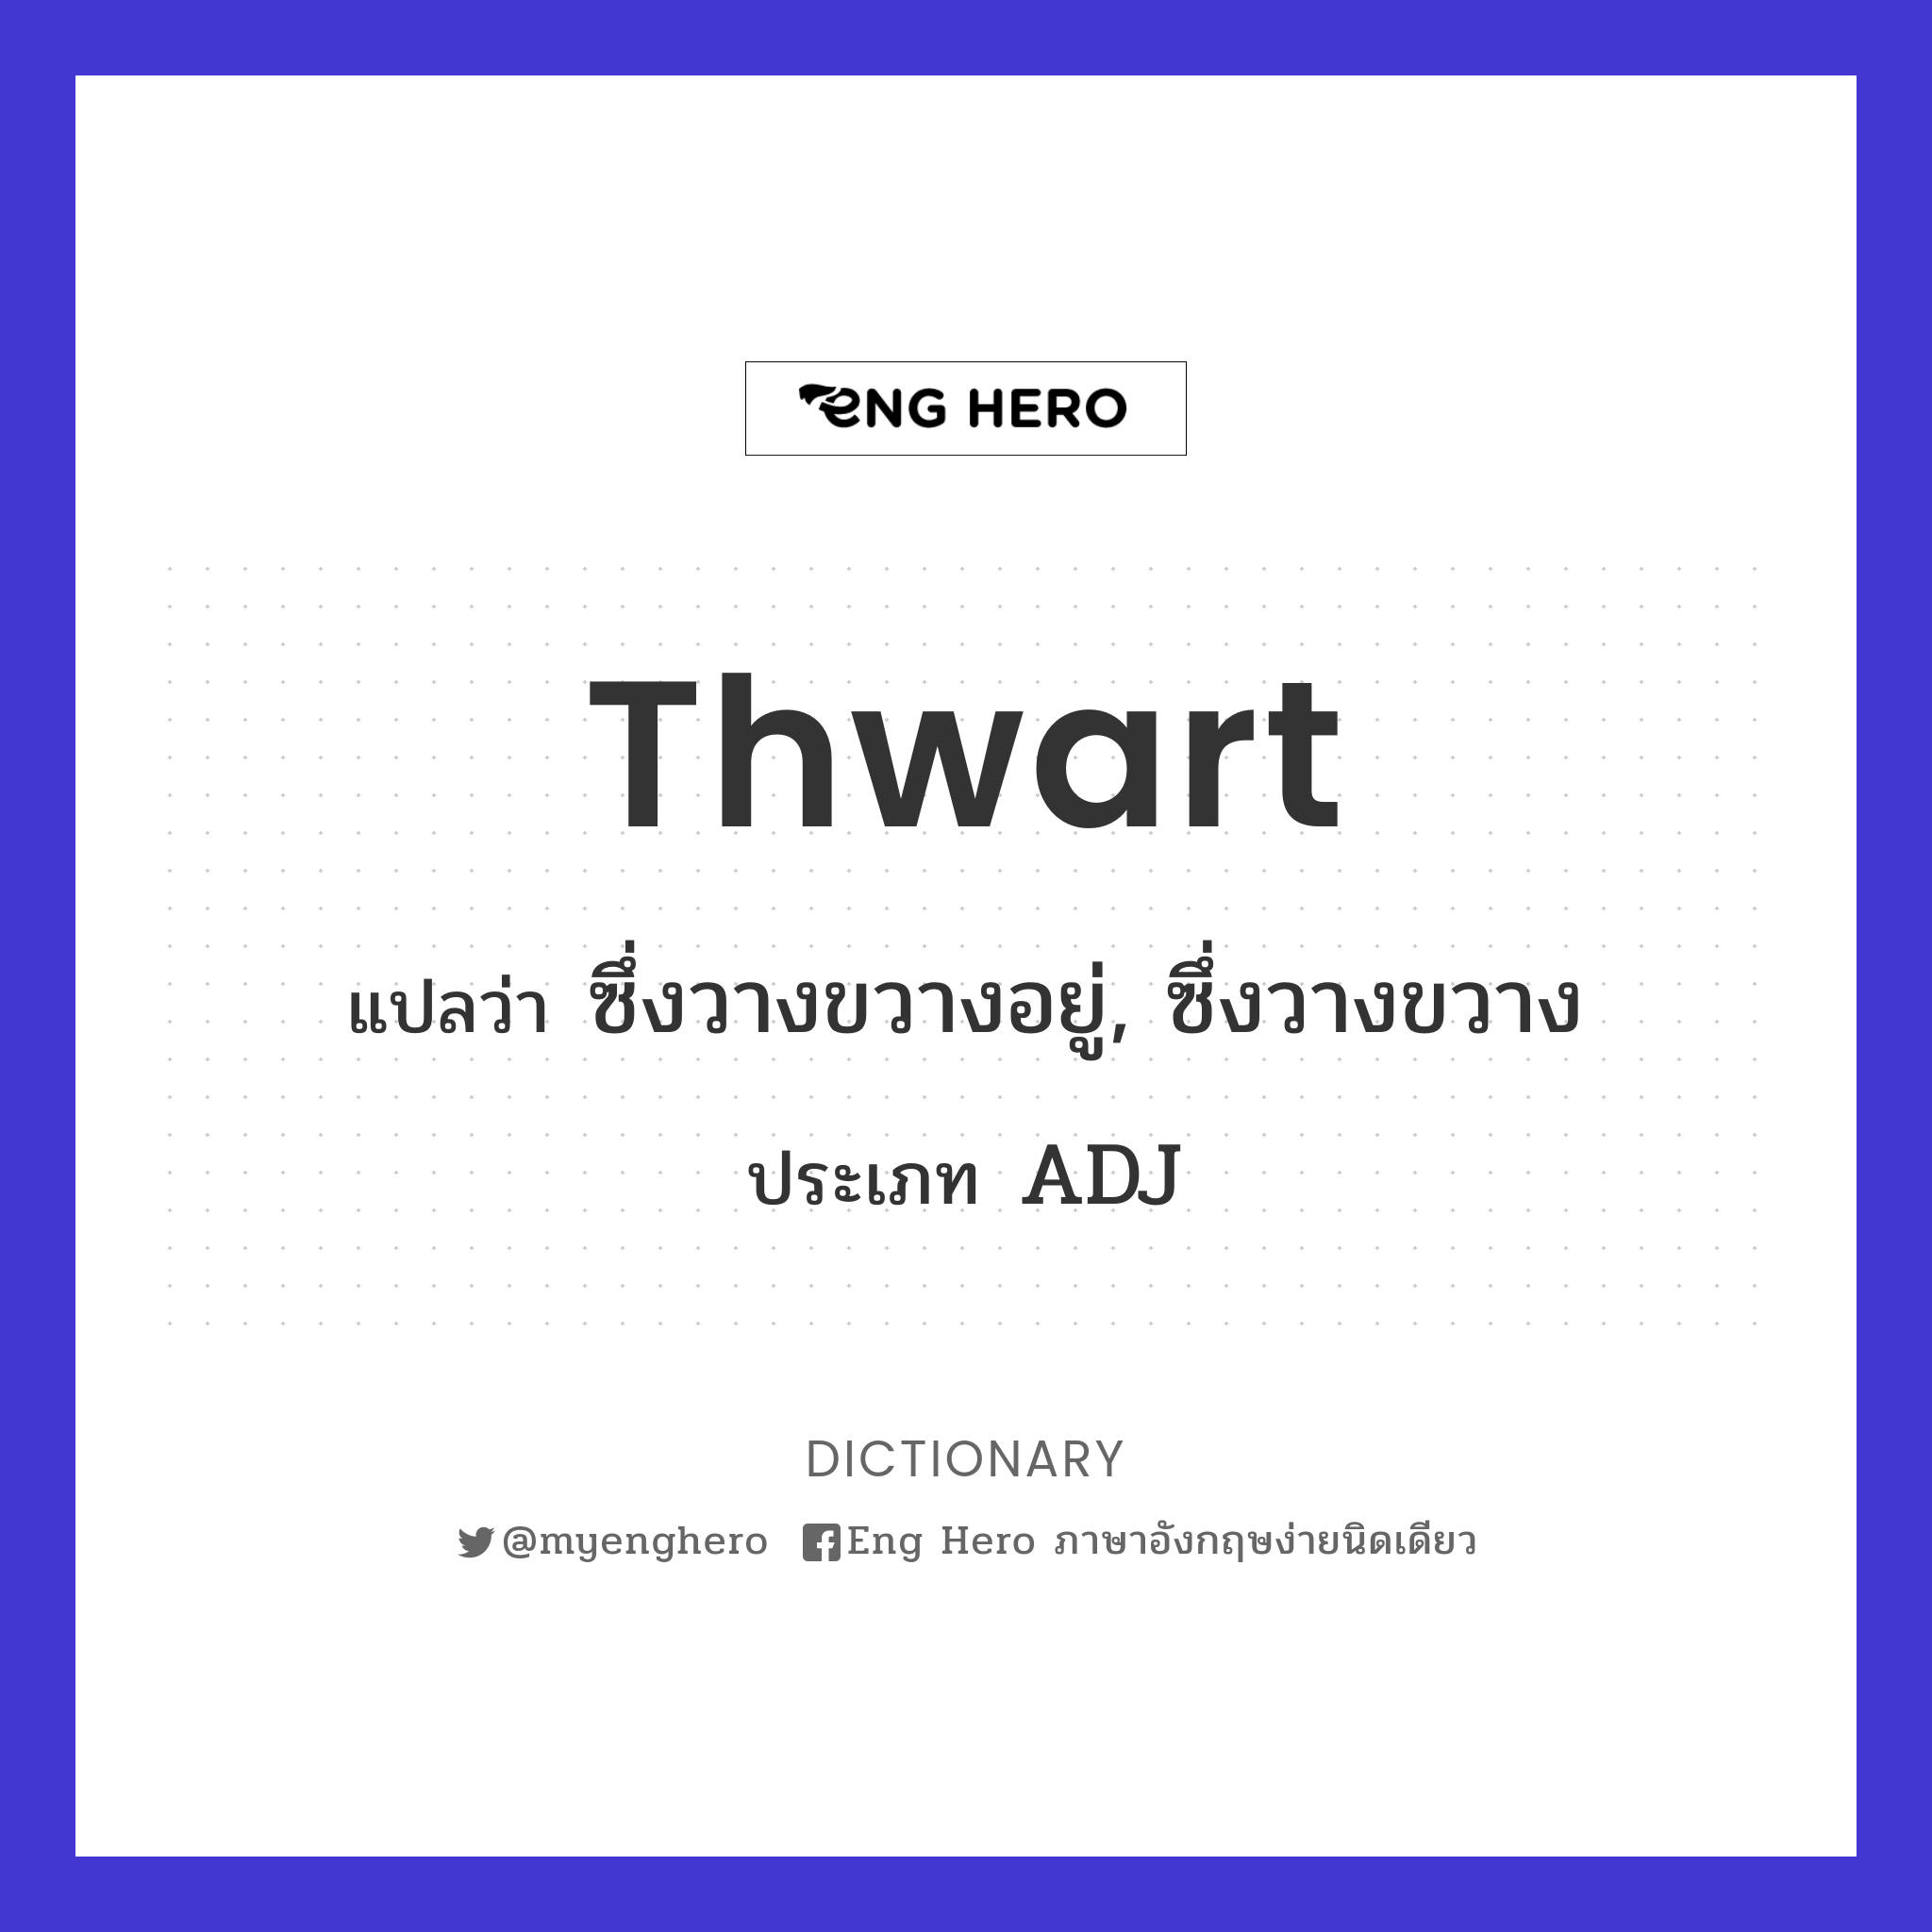 thwart